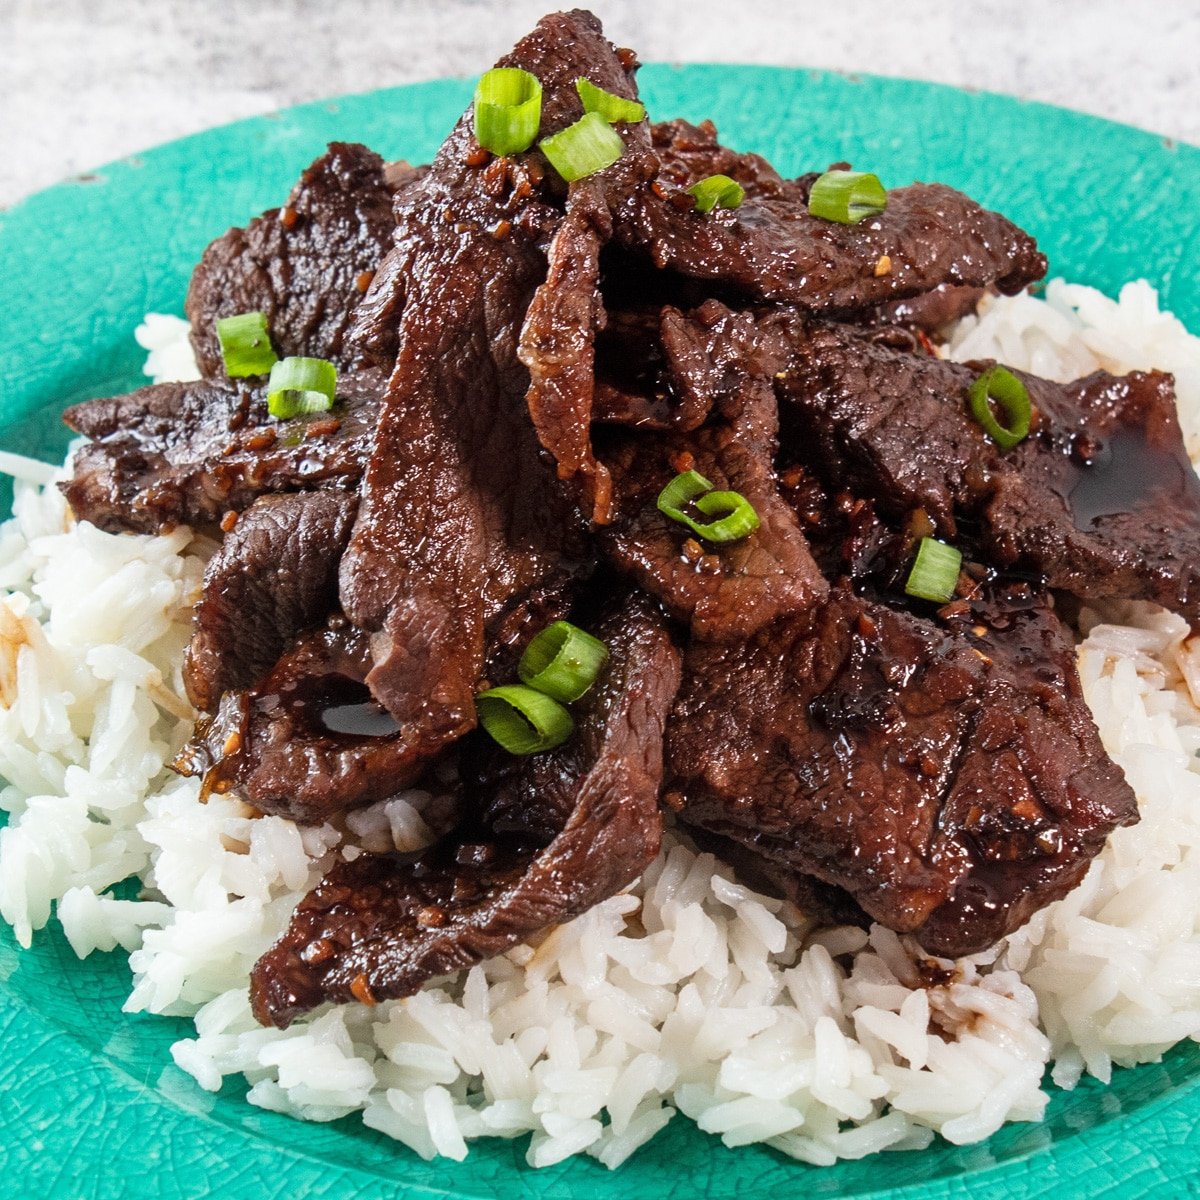 لحم البقر المنغولي اللذيذ يقدم على طبقة من الأرز الأبيض.